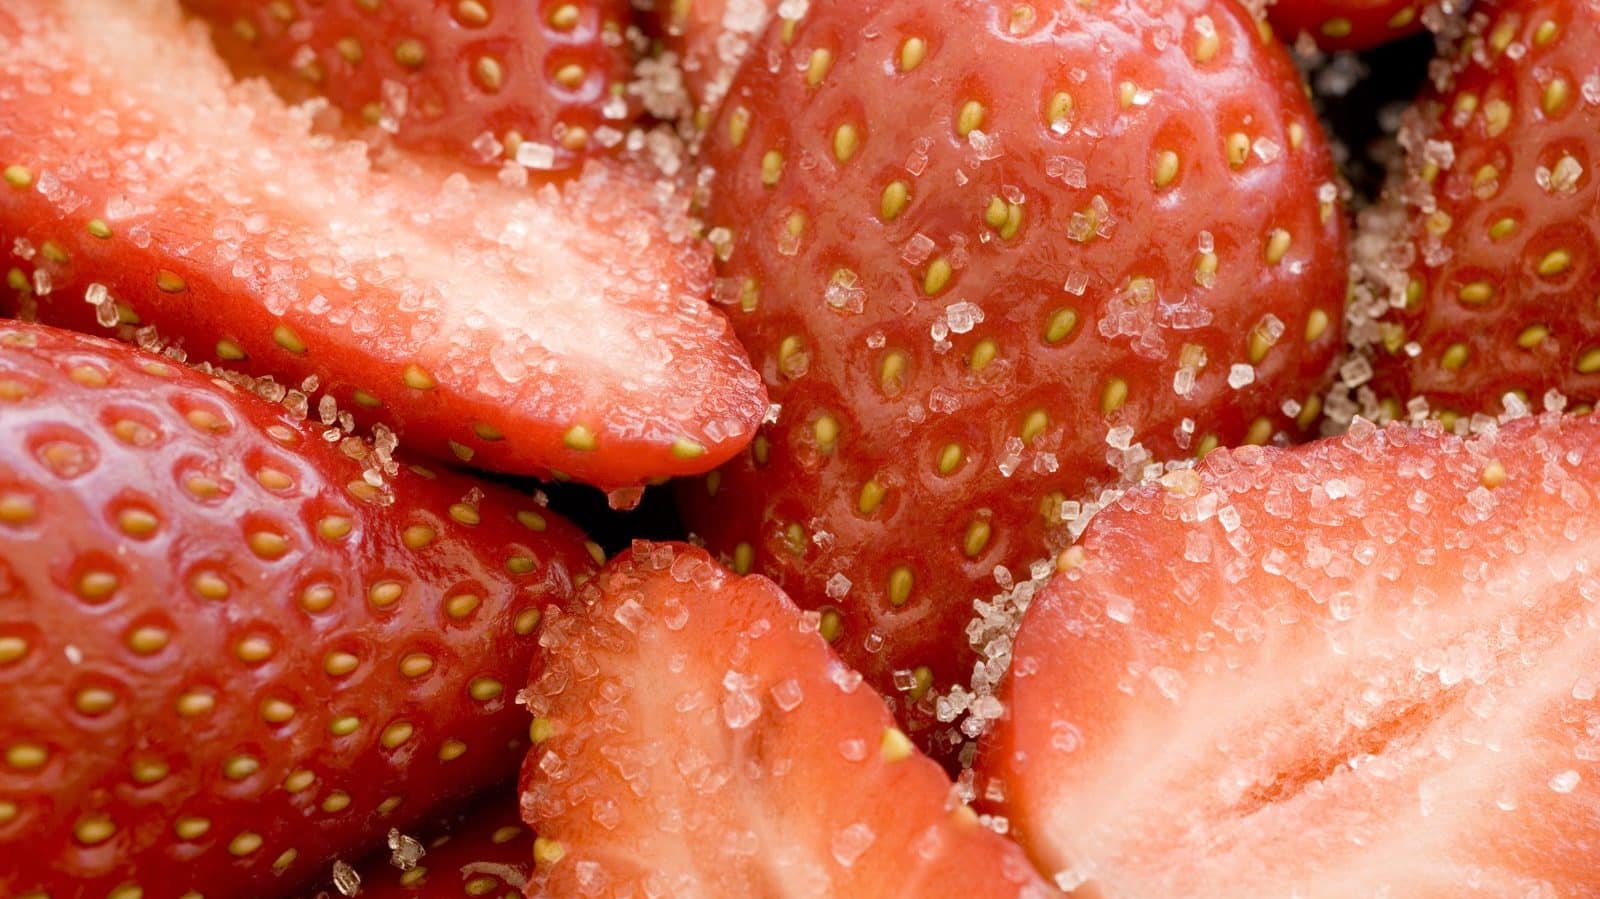 Des fraises vu de pres avec des grains de sucre dessus 